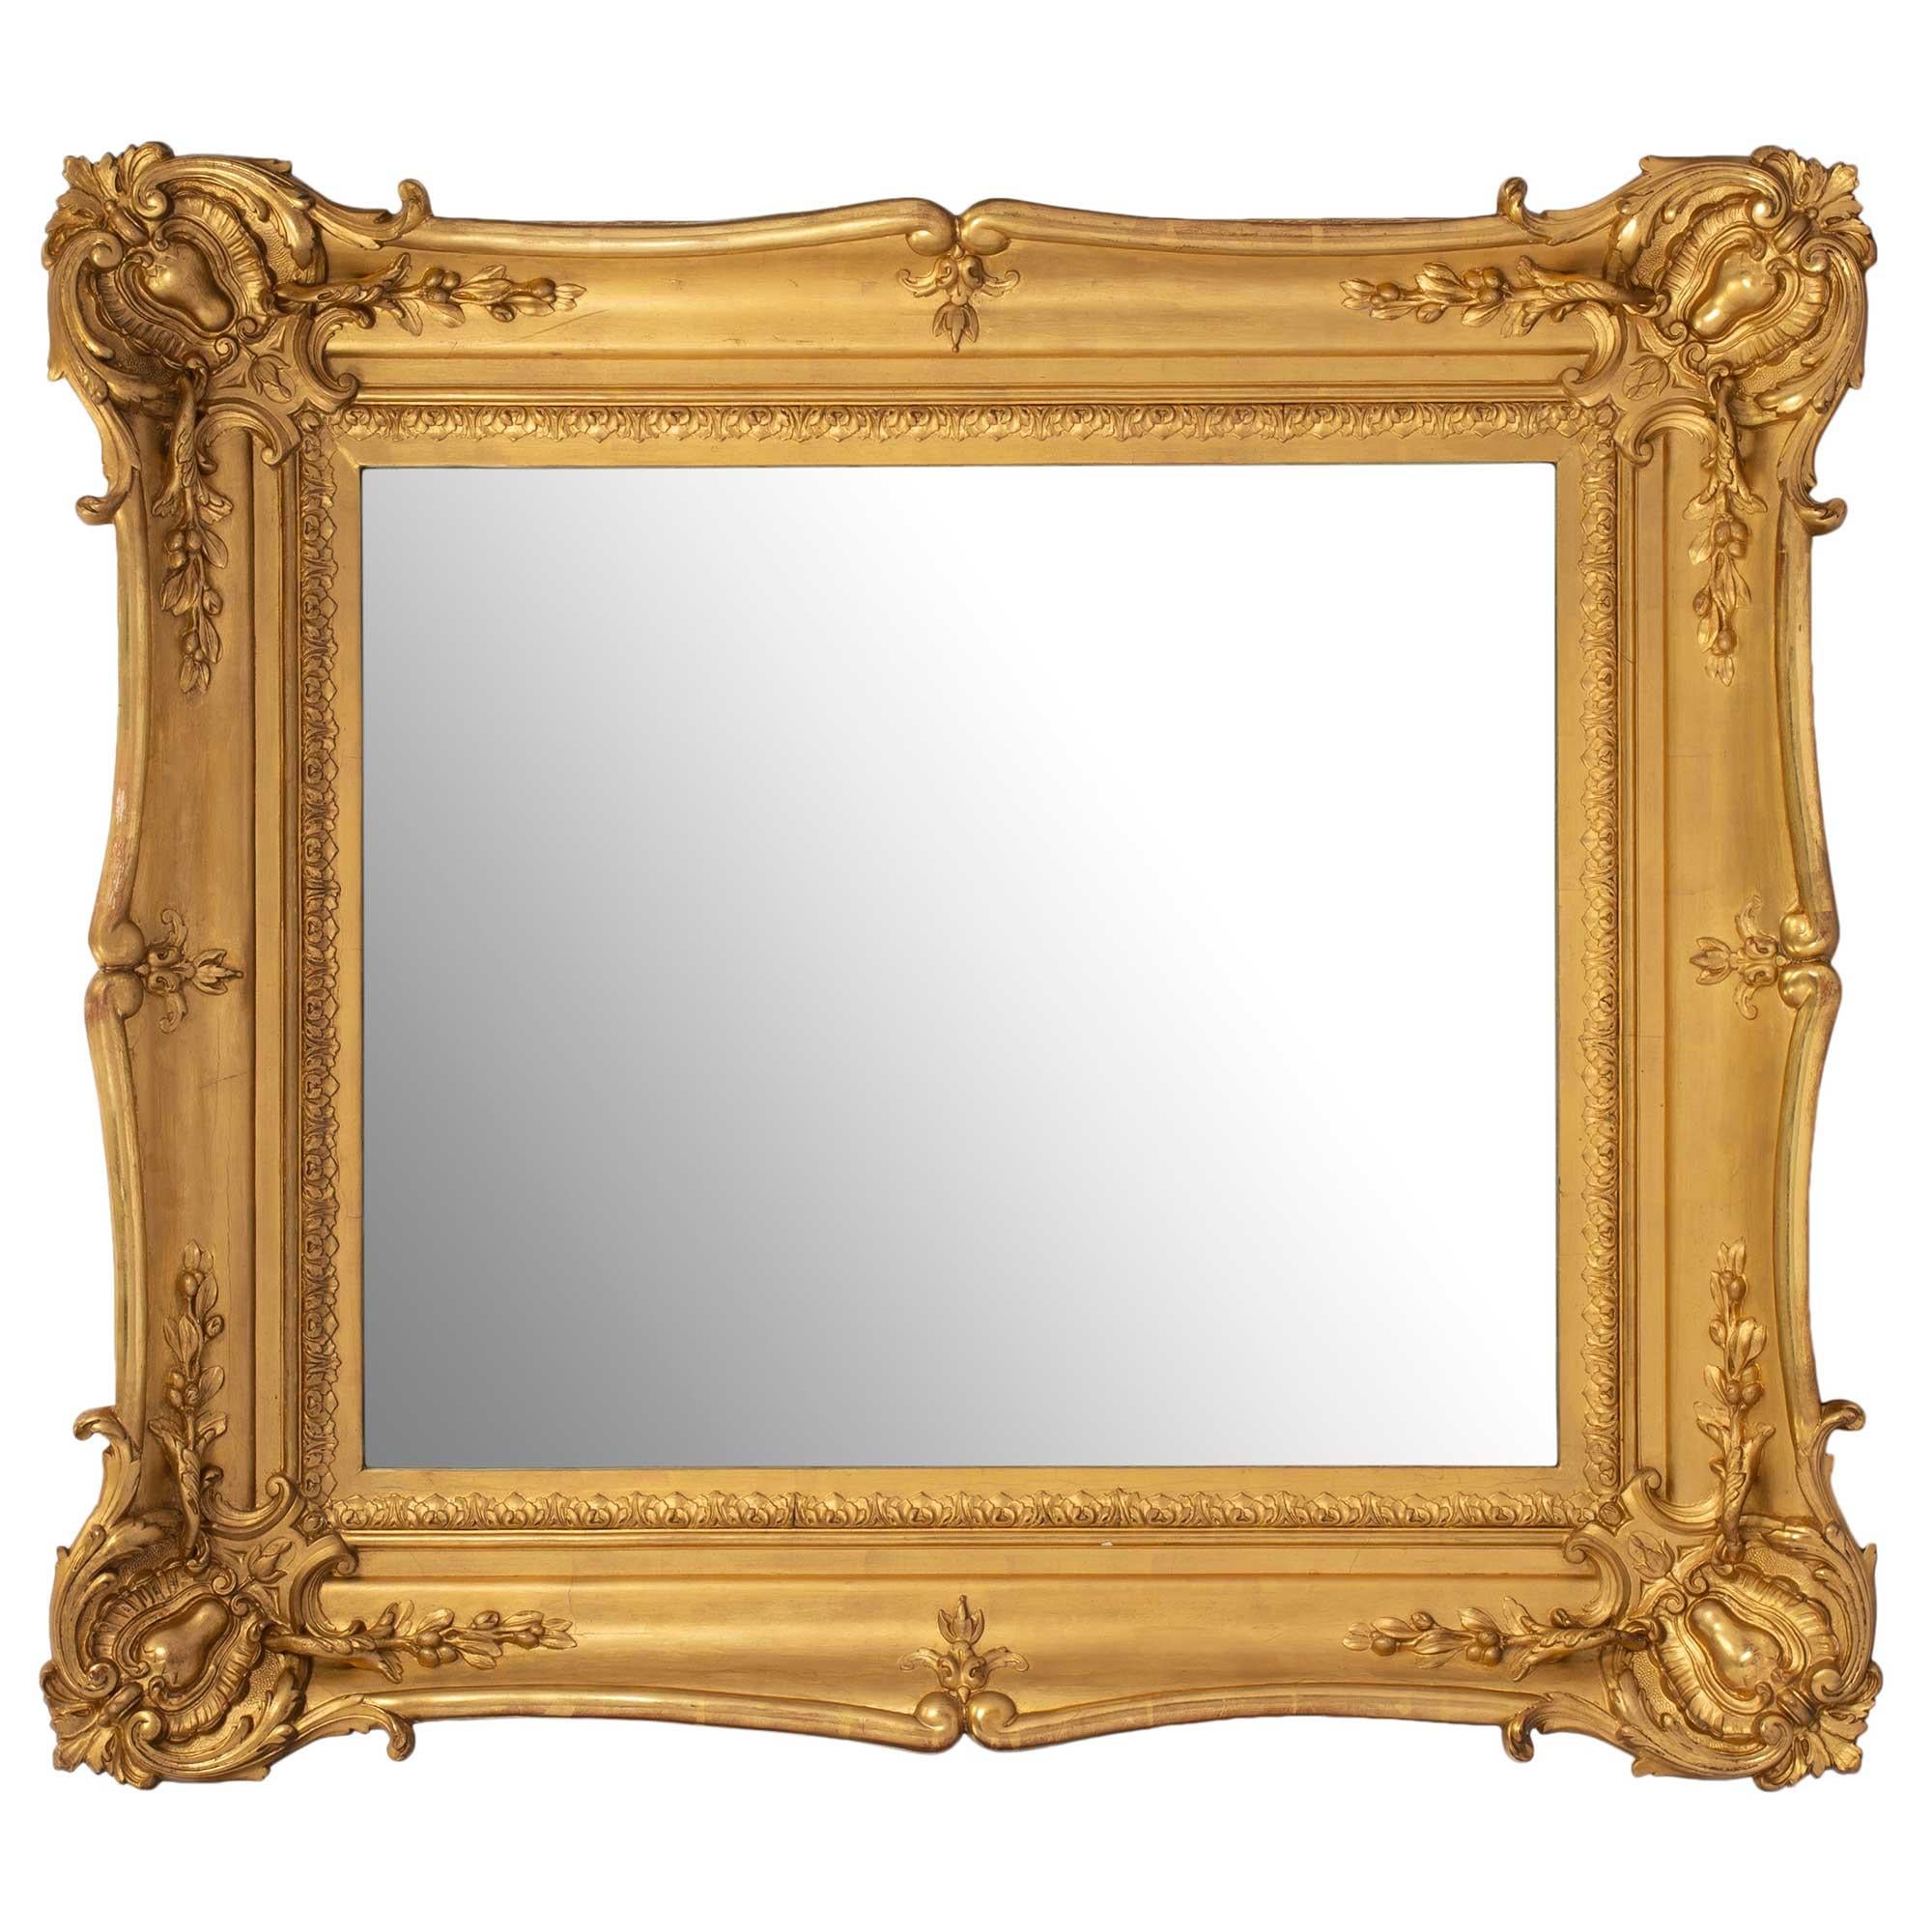 Une belle paire de miroirs en bois doré de style Louis XV du 19ème siècle. Chaque miroir présente une bordure sculptée de feuillages dans le cadre à volutes. Le joli cadre en bois doré présentait un merveilleux mouvement avec de grandes sculptures